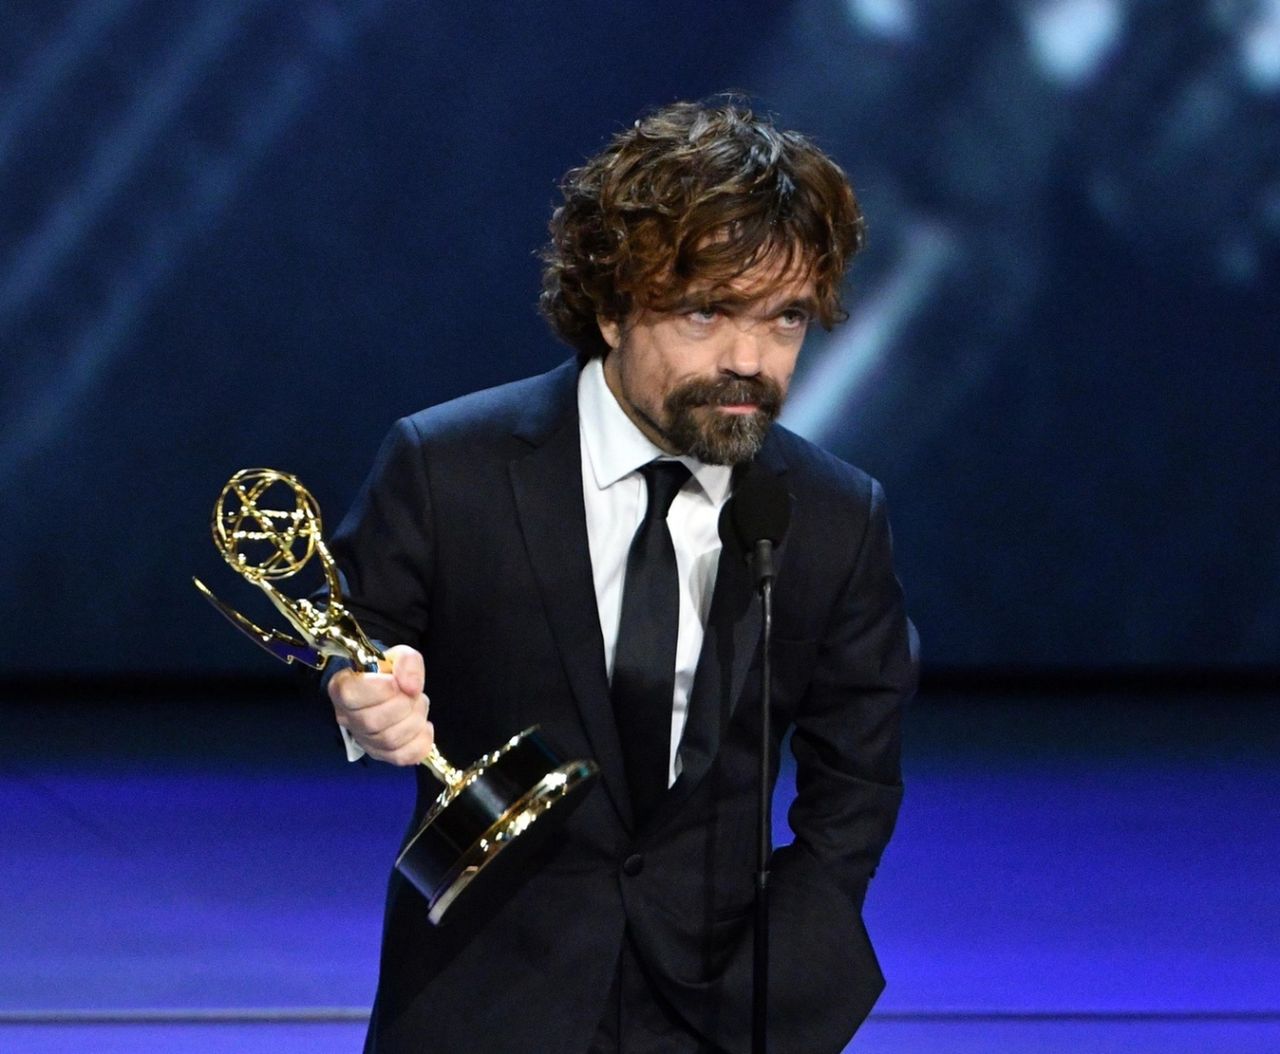 Peter Dinklage: sprawił, że widzowie pokochali Tyriona. Trzecia nagroda Emmy za "Grę o tron" to nie przypadek